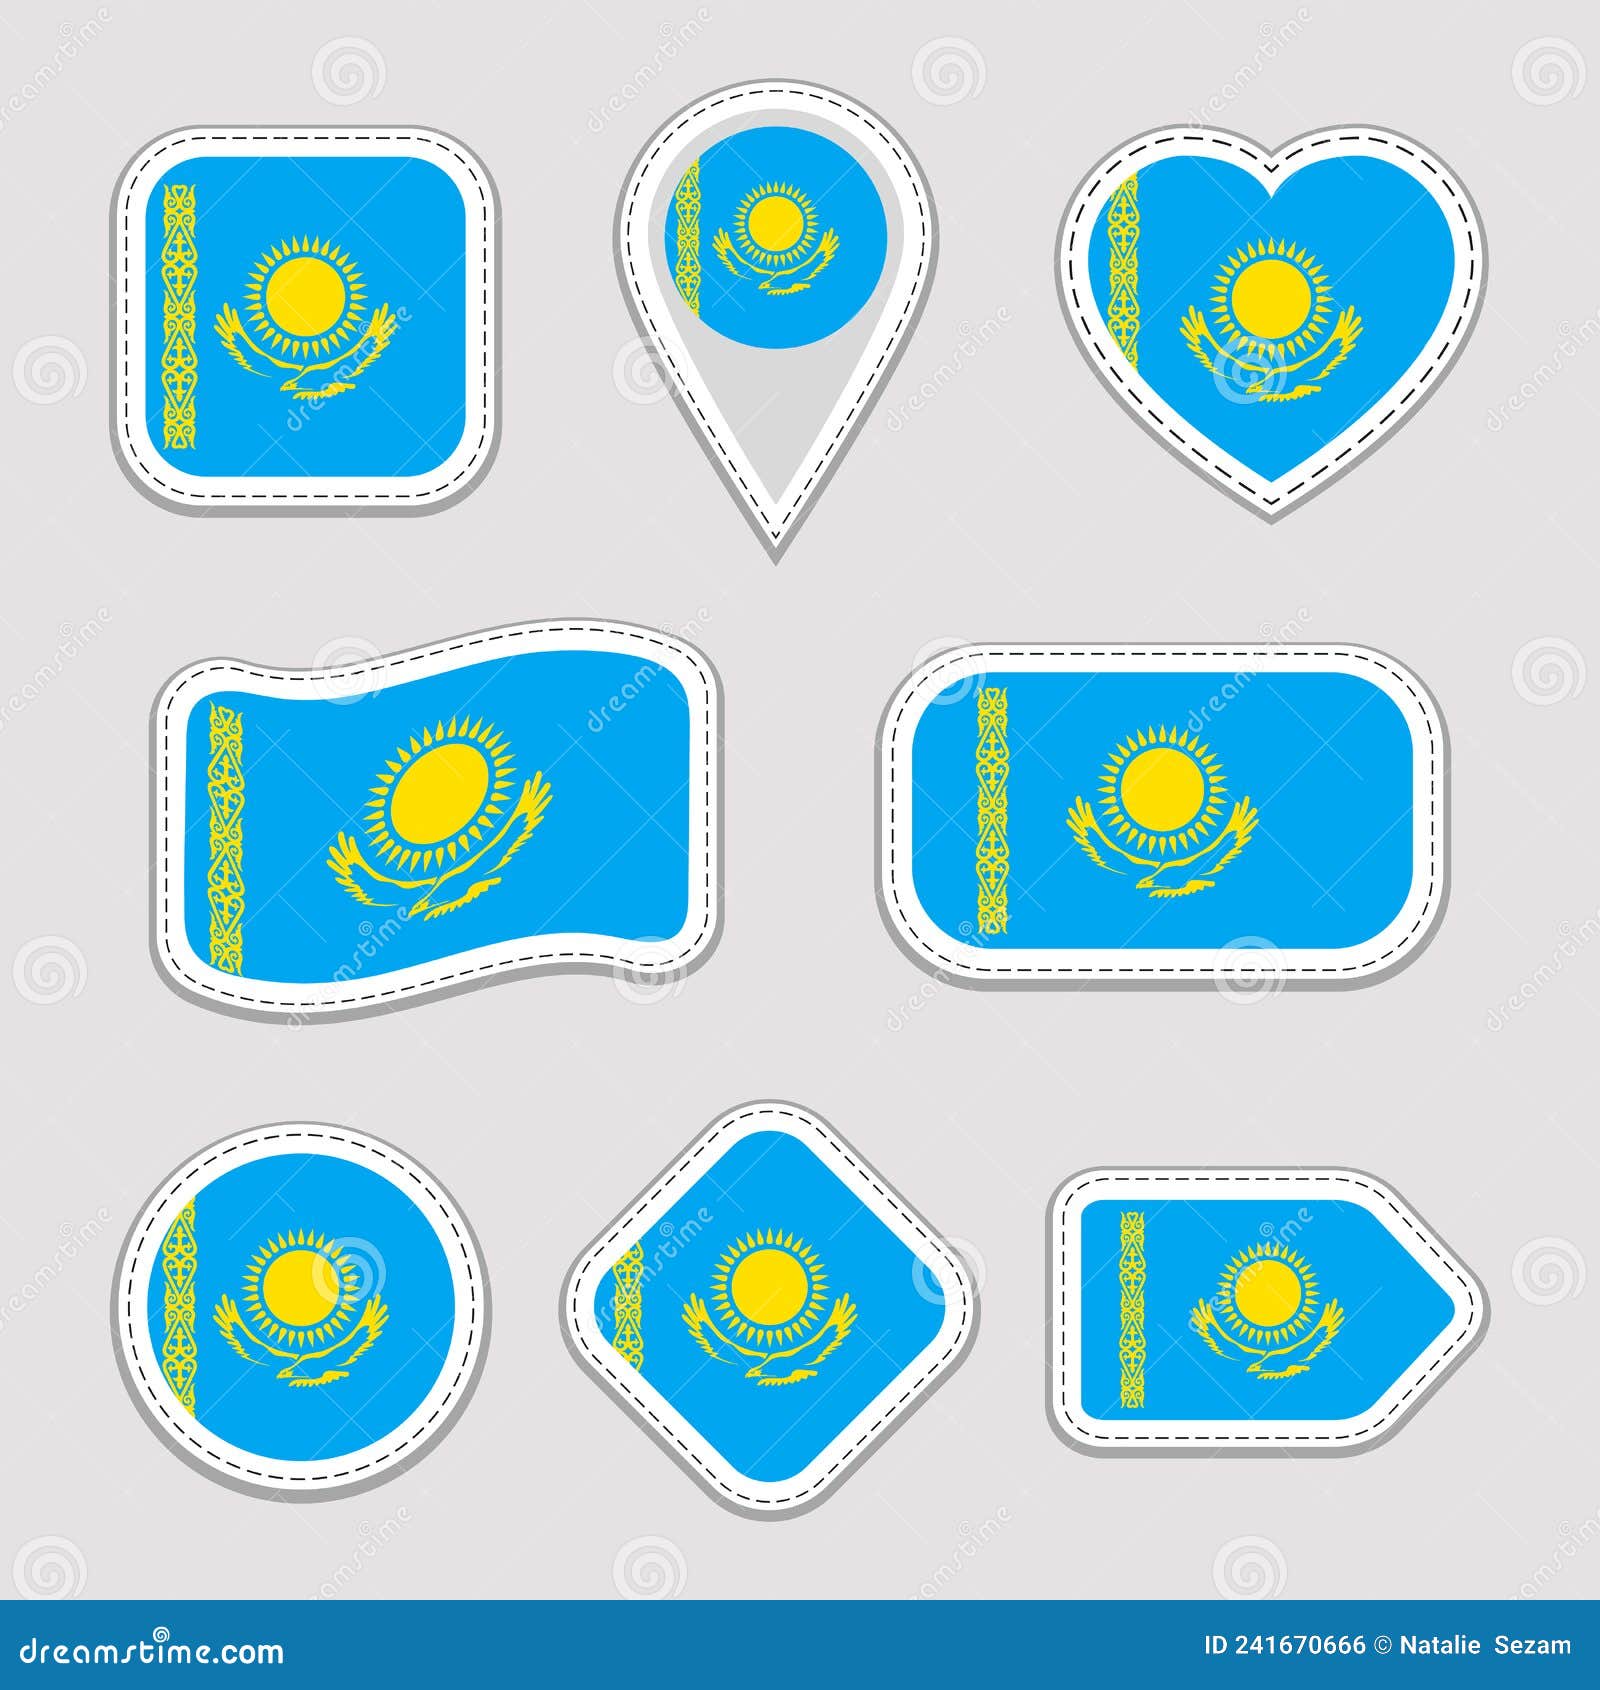 Kazakhstan flag for Kazakh' Sticker